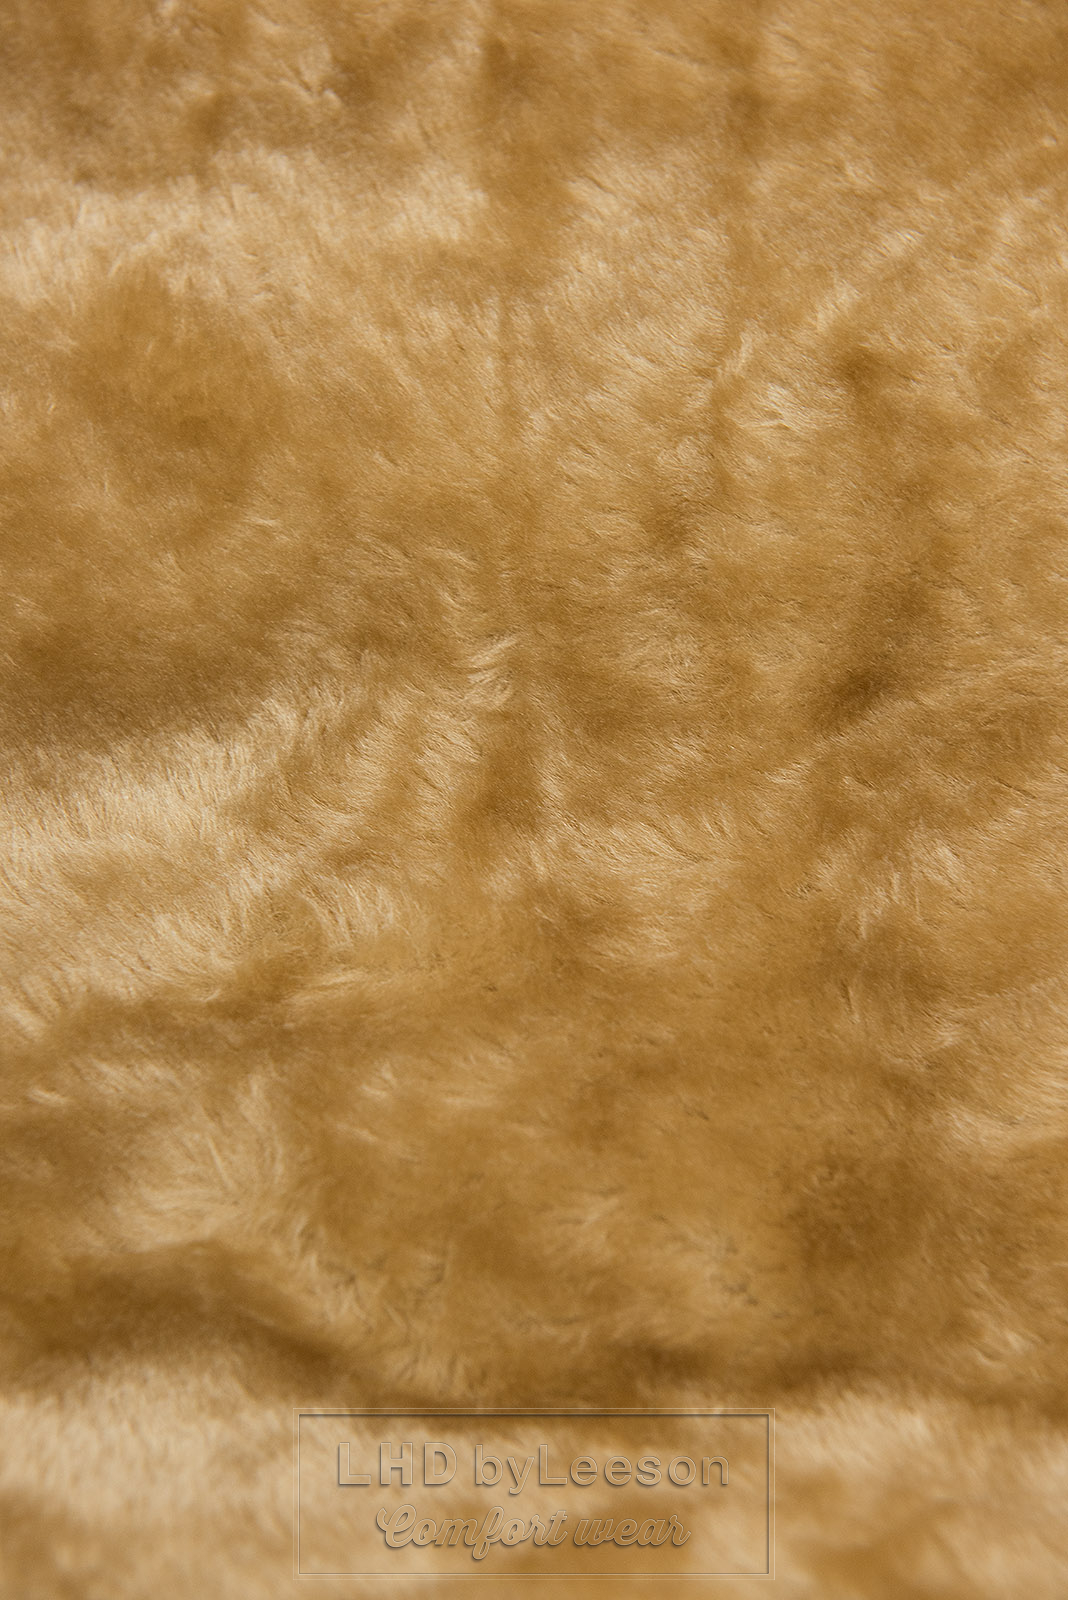 Piaskowo-brązowa pikowana kurtka zimowa z kapturem